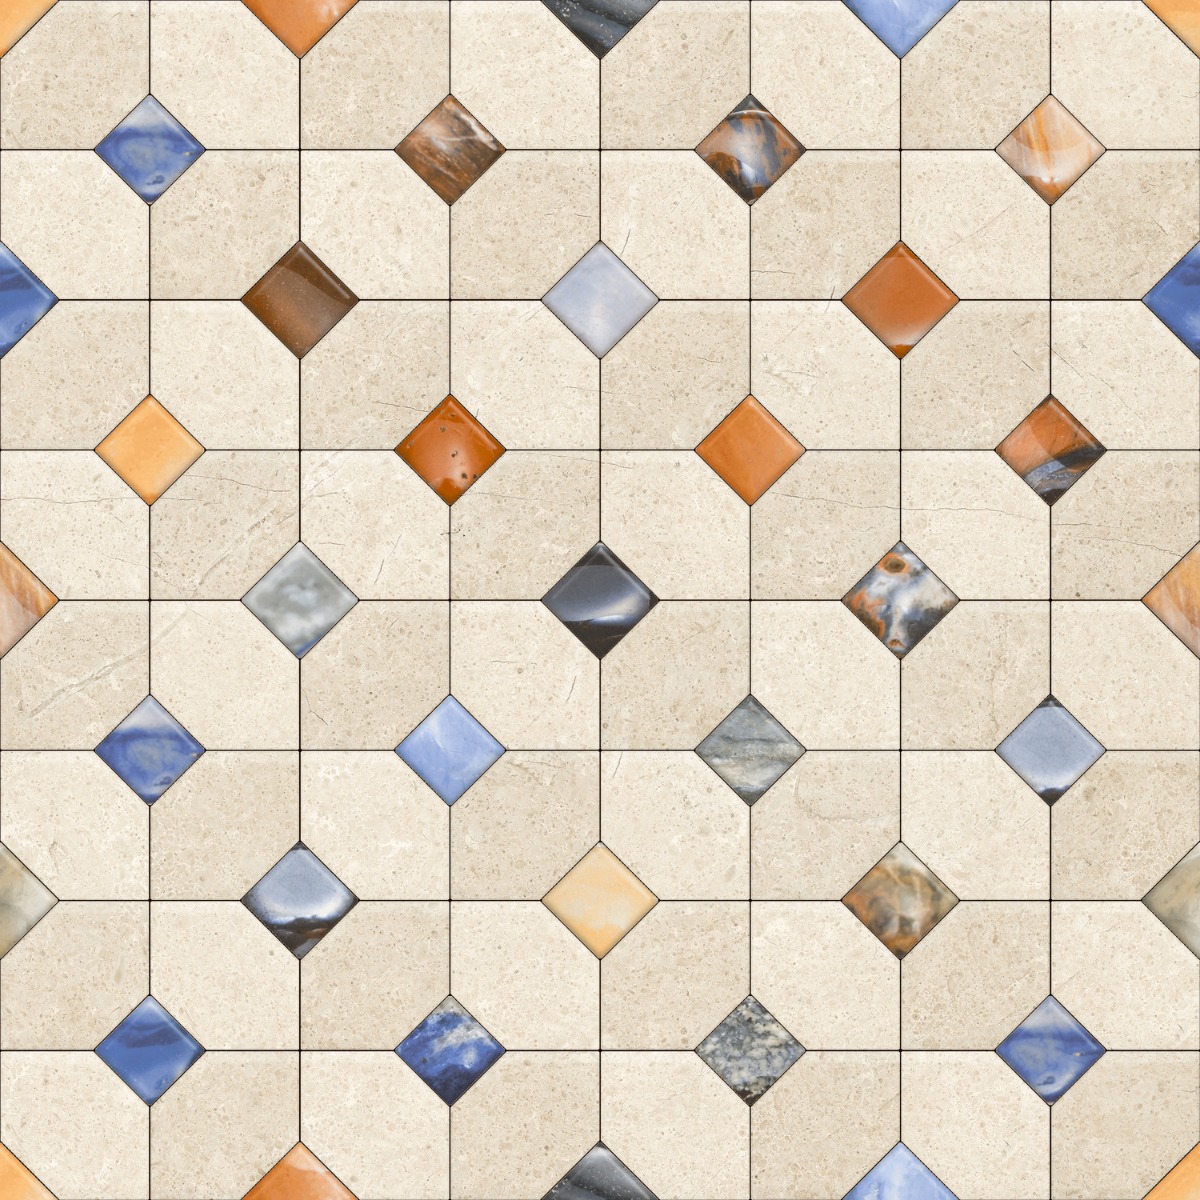 Pattern Tiles for Bathroom Tiles, Balcony Tiles, Swimming Pool Tiles, Hospital Tiles, Bar/Restaurant, Commercial/Office, Outdoor/Terrace